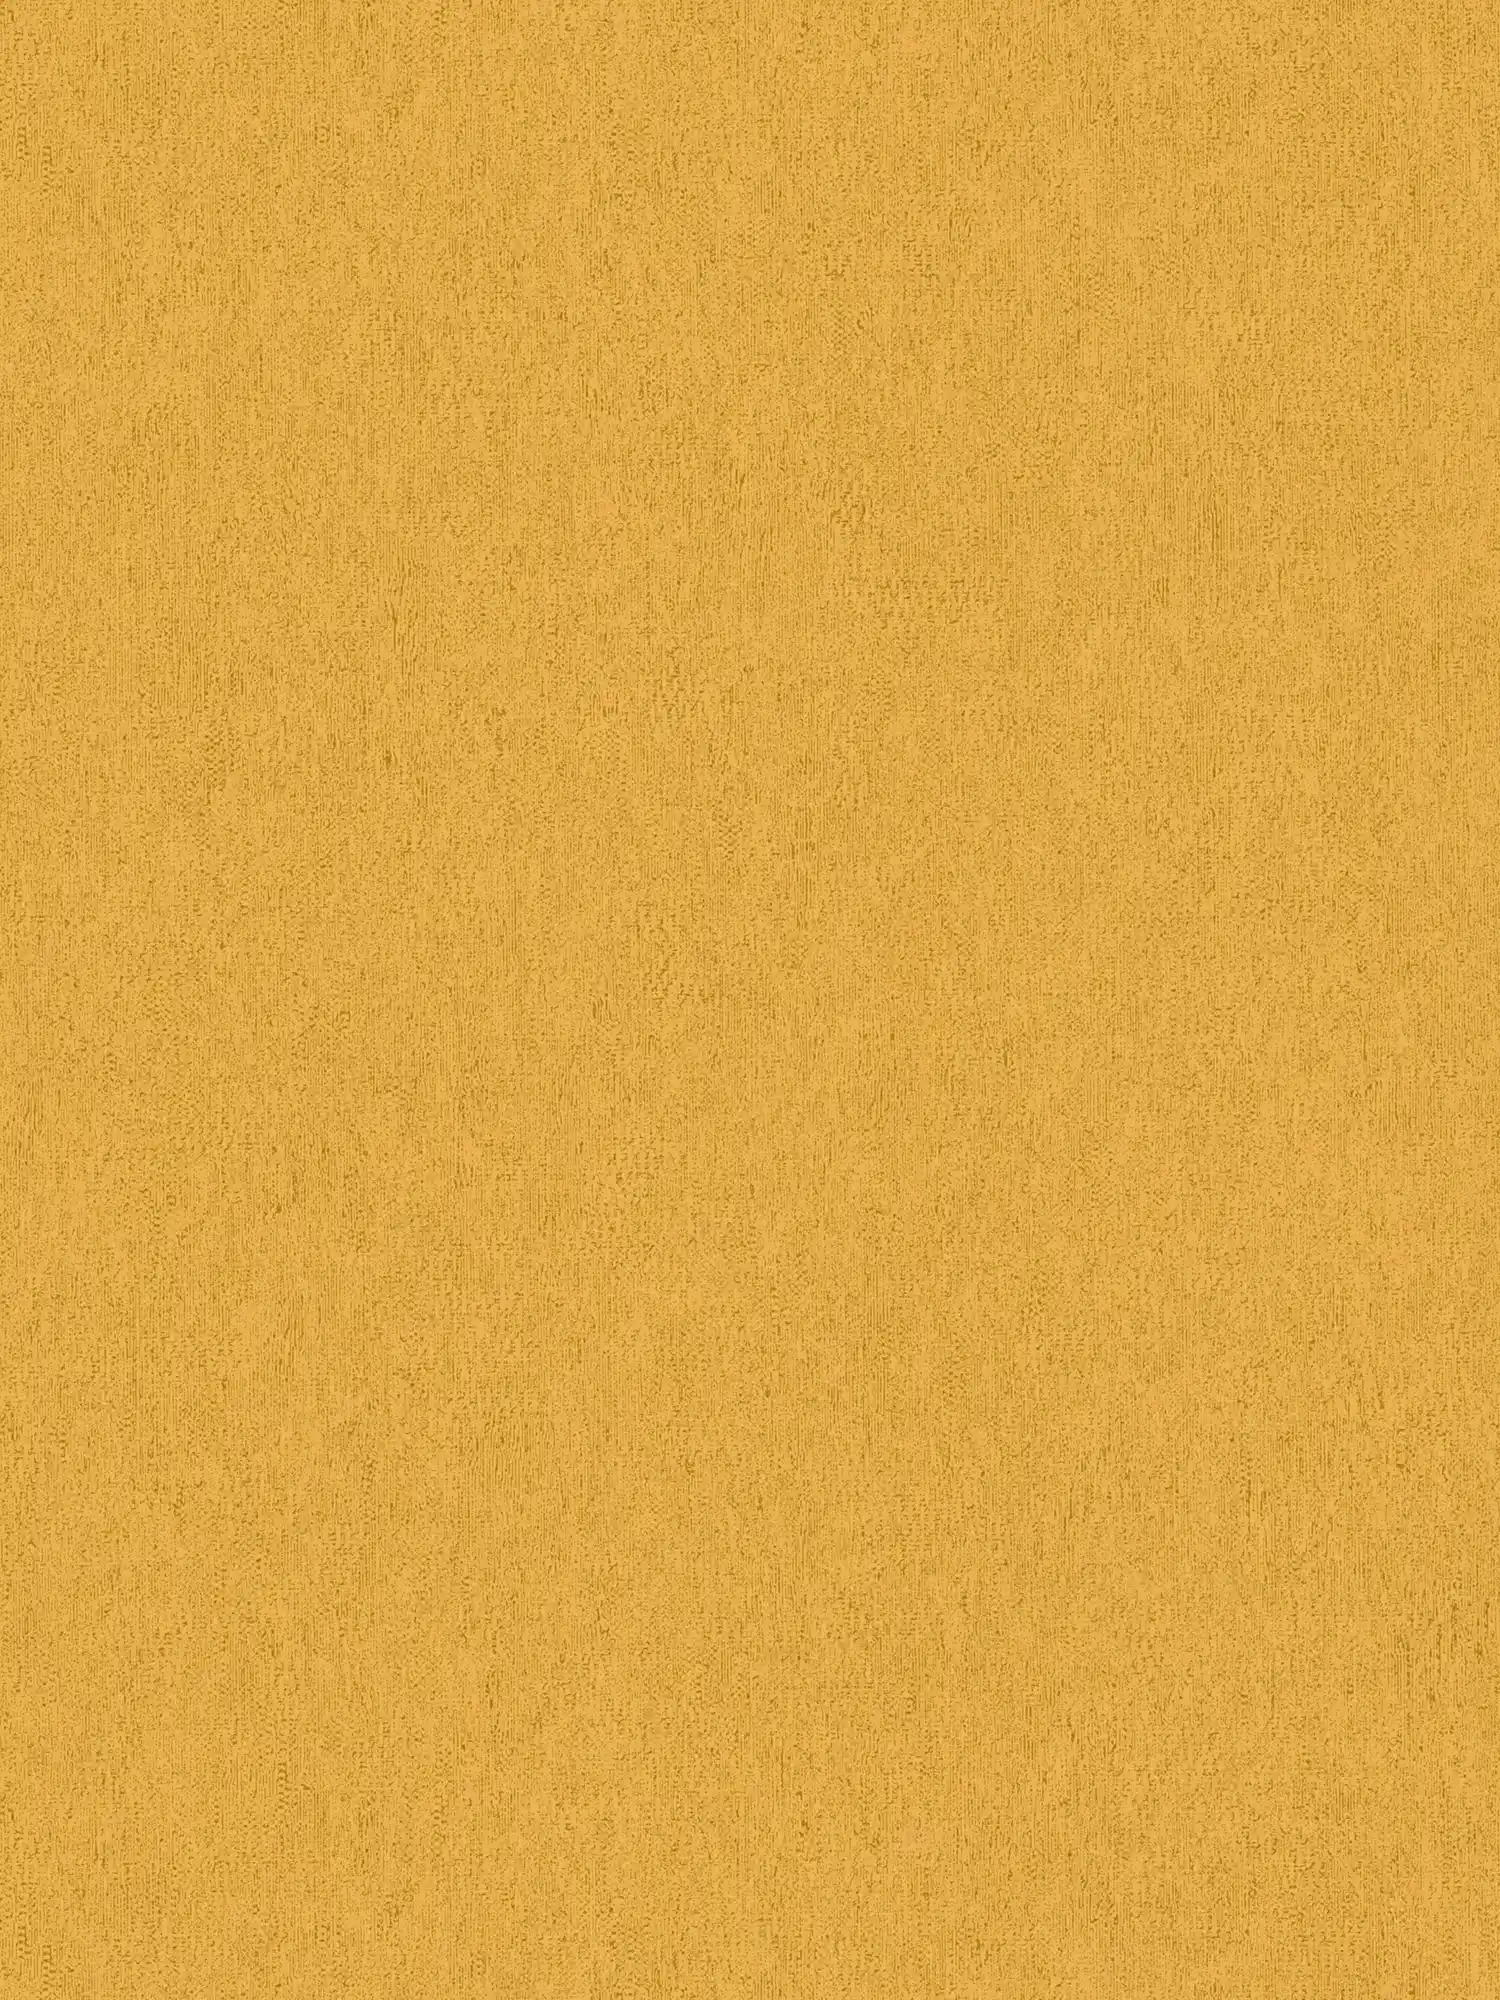 Einfarbige Tapete mit Struktur Optik matt & glatt – Gelb
